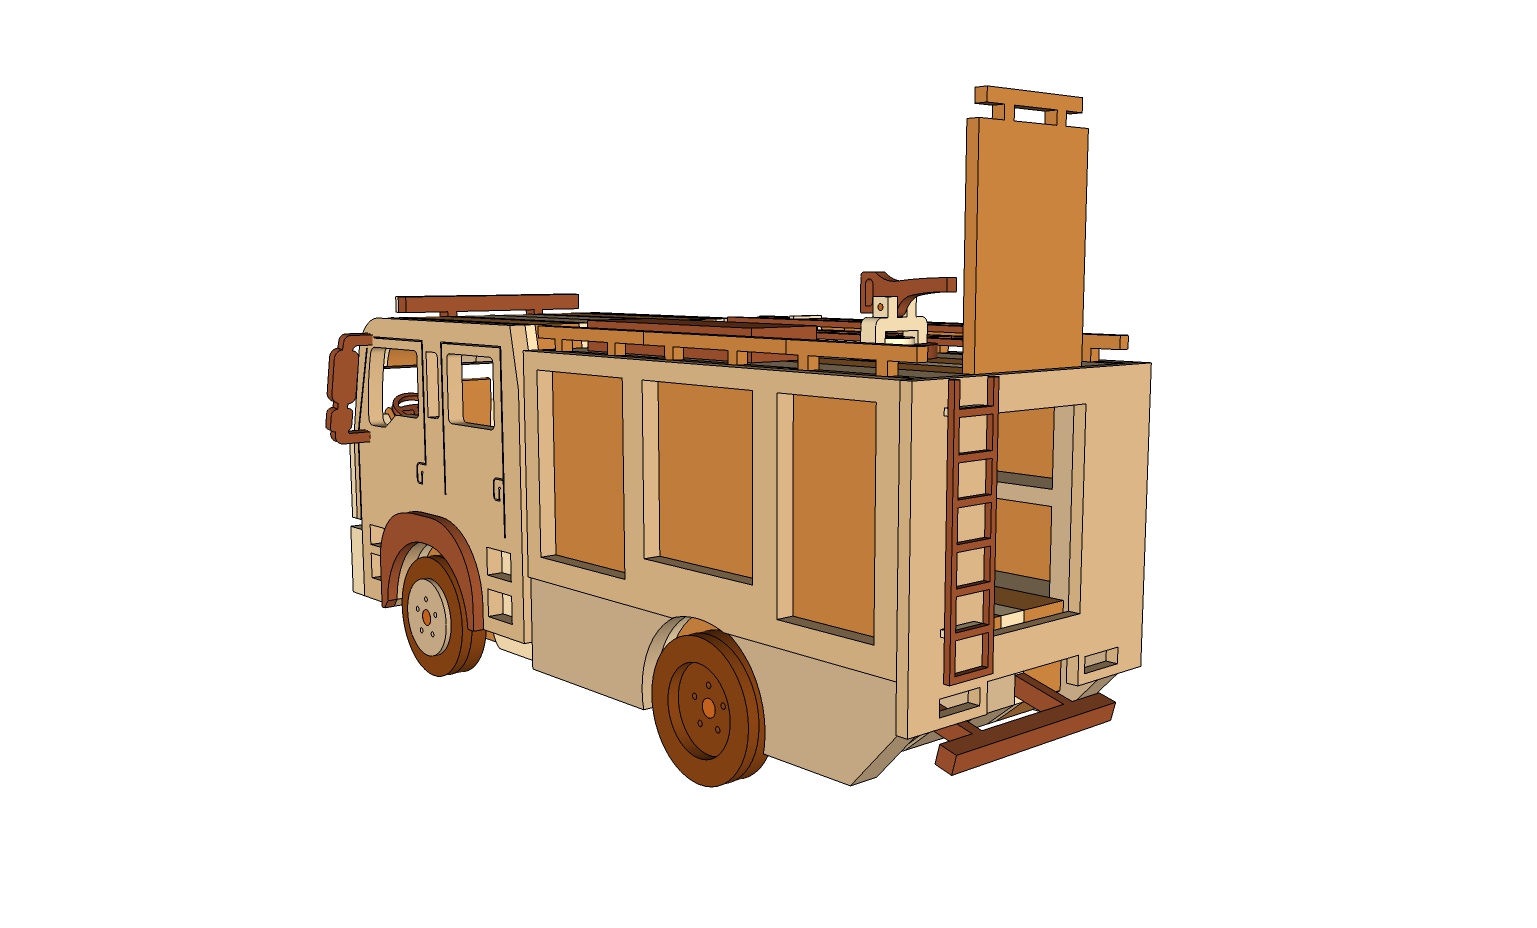 Fire Truck – Plans – DM Idea